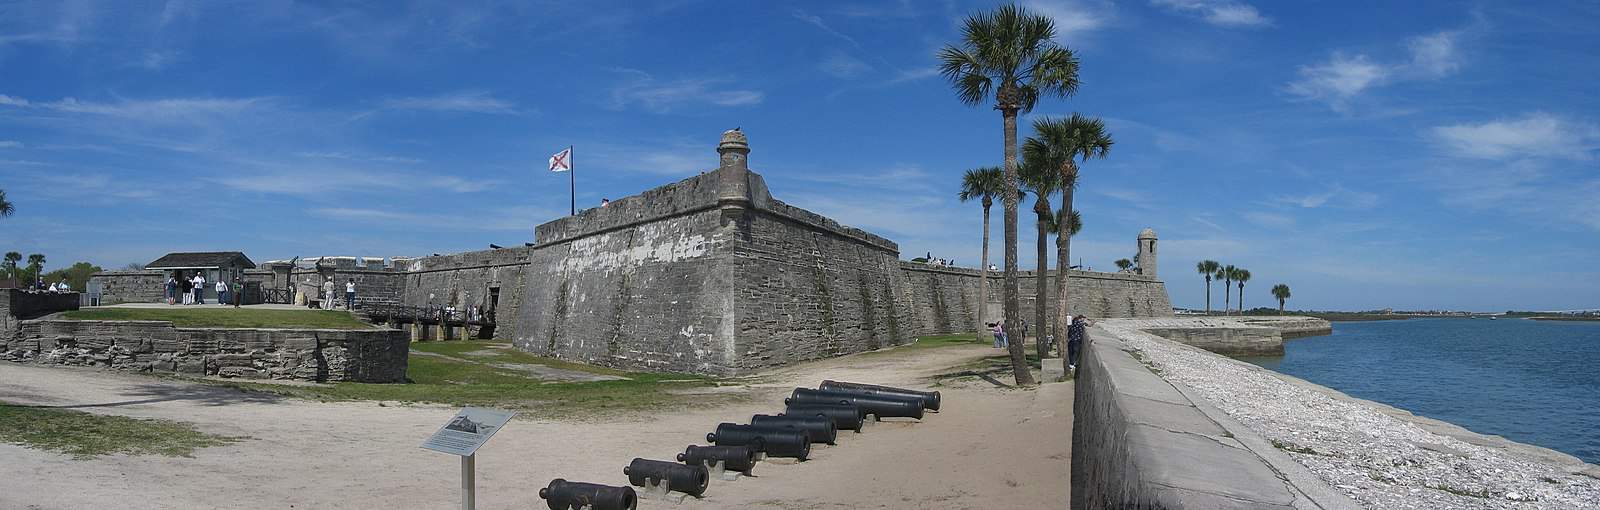 Castillo de San Marcos Fort